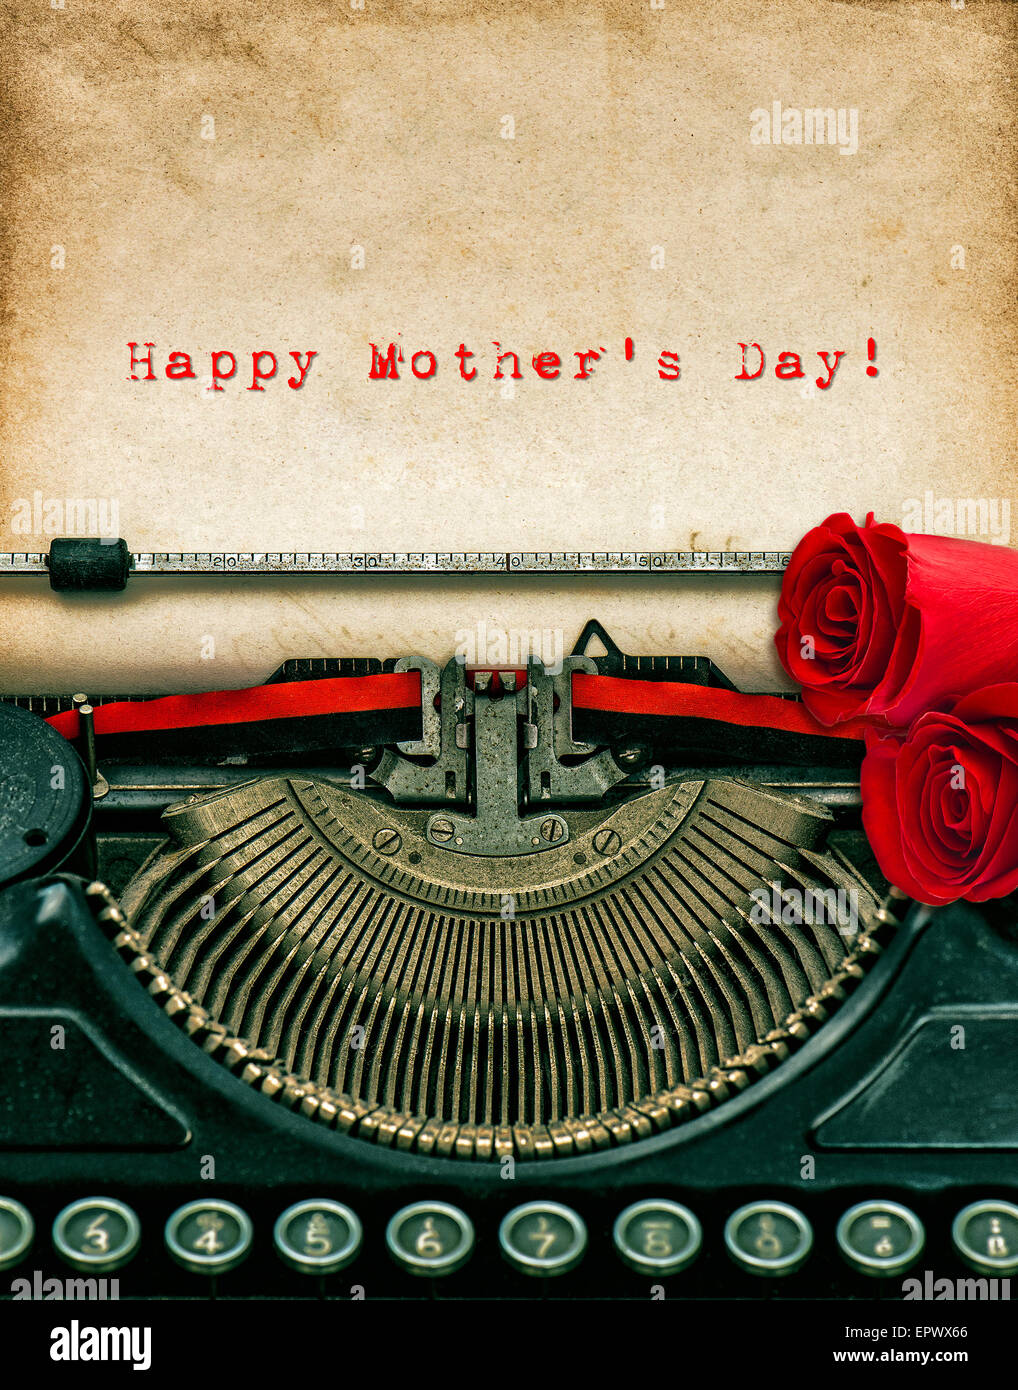 Vintage Schreibmaschine und rote Rosenblüten. Im Alter von texturierten Grunge Papier. Probieren Sie Text Muttertag! Stockfoto